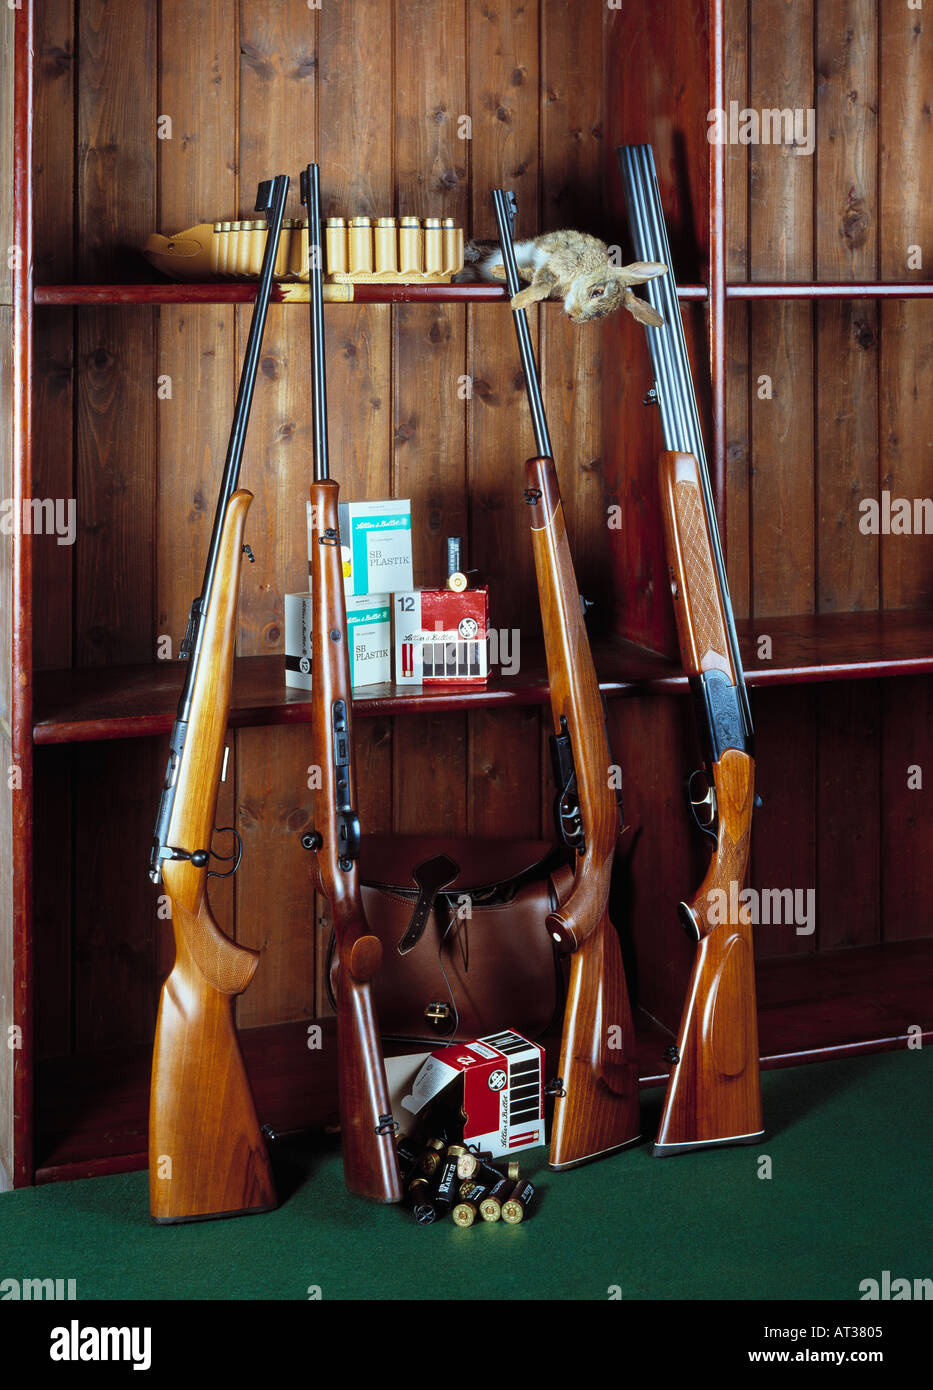 Una collezione di armi sportive - fucili a canna liscia e rigata Foto Stock